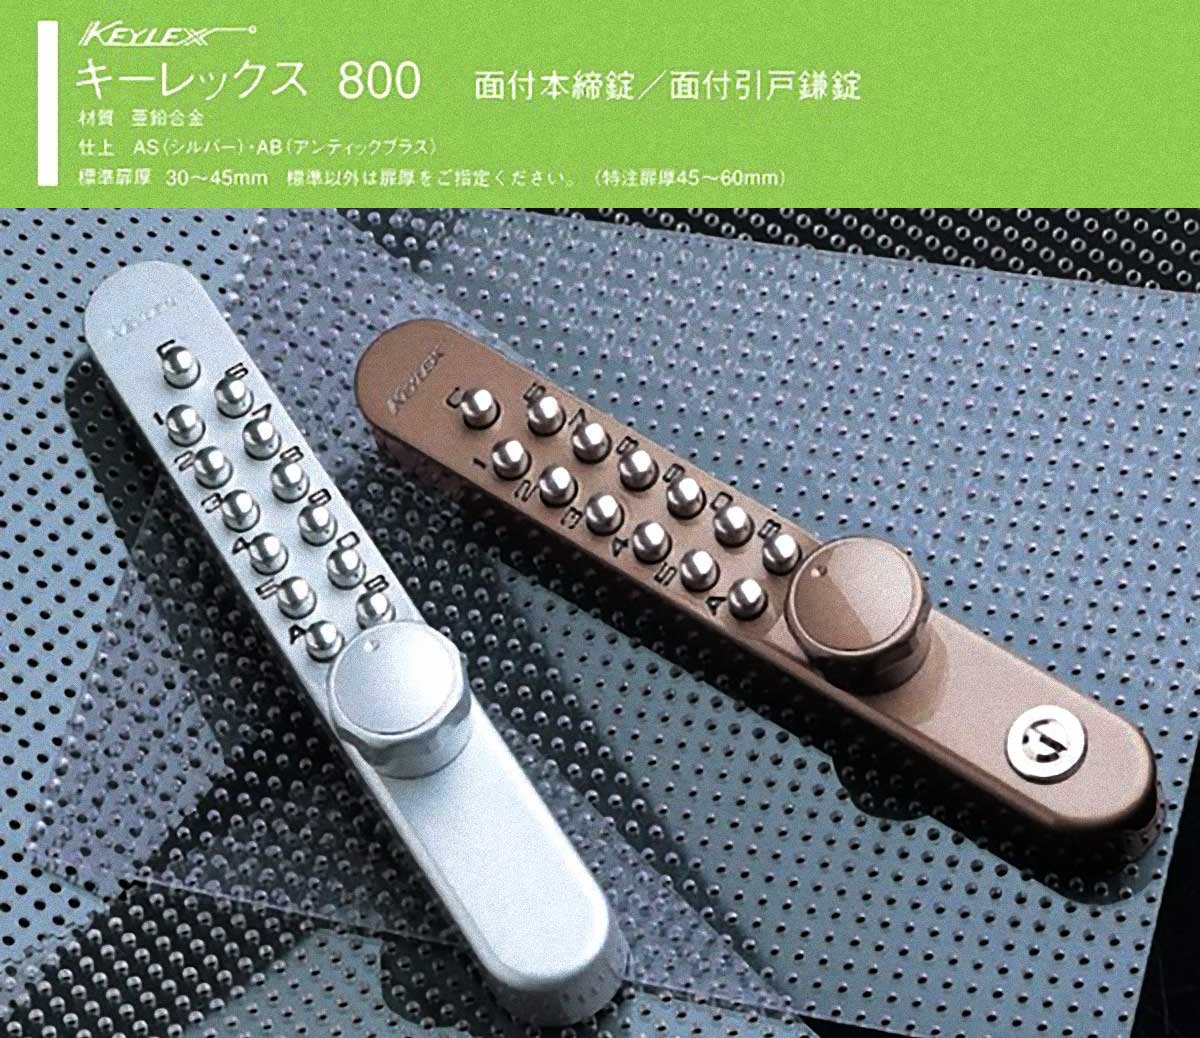 NAGASAWA キーレックス800 面付引戸鎌錠 ロックターンタイプ シルバー 22805 - 4